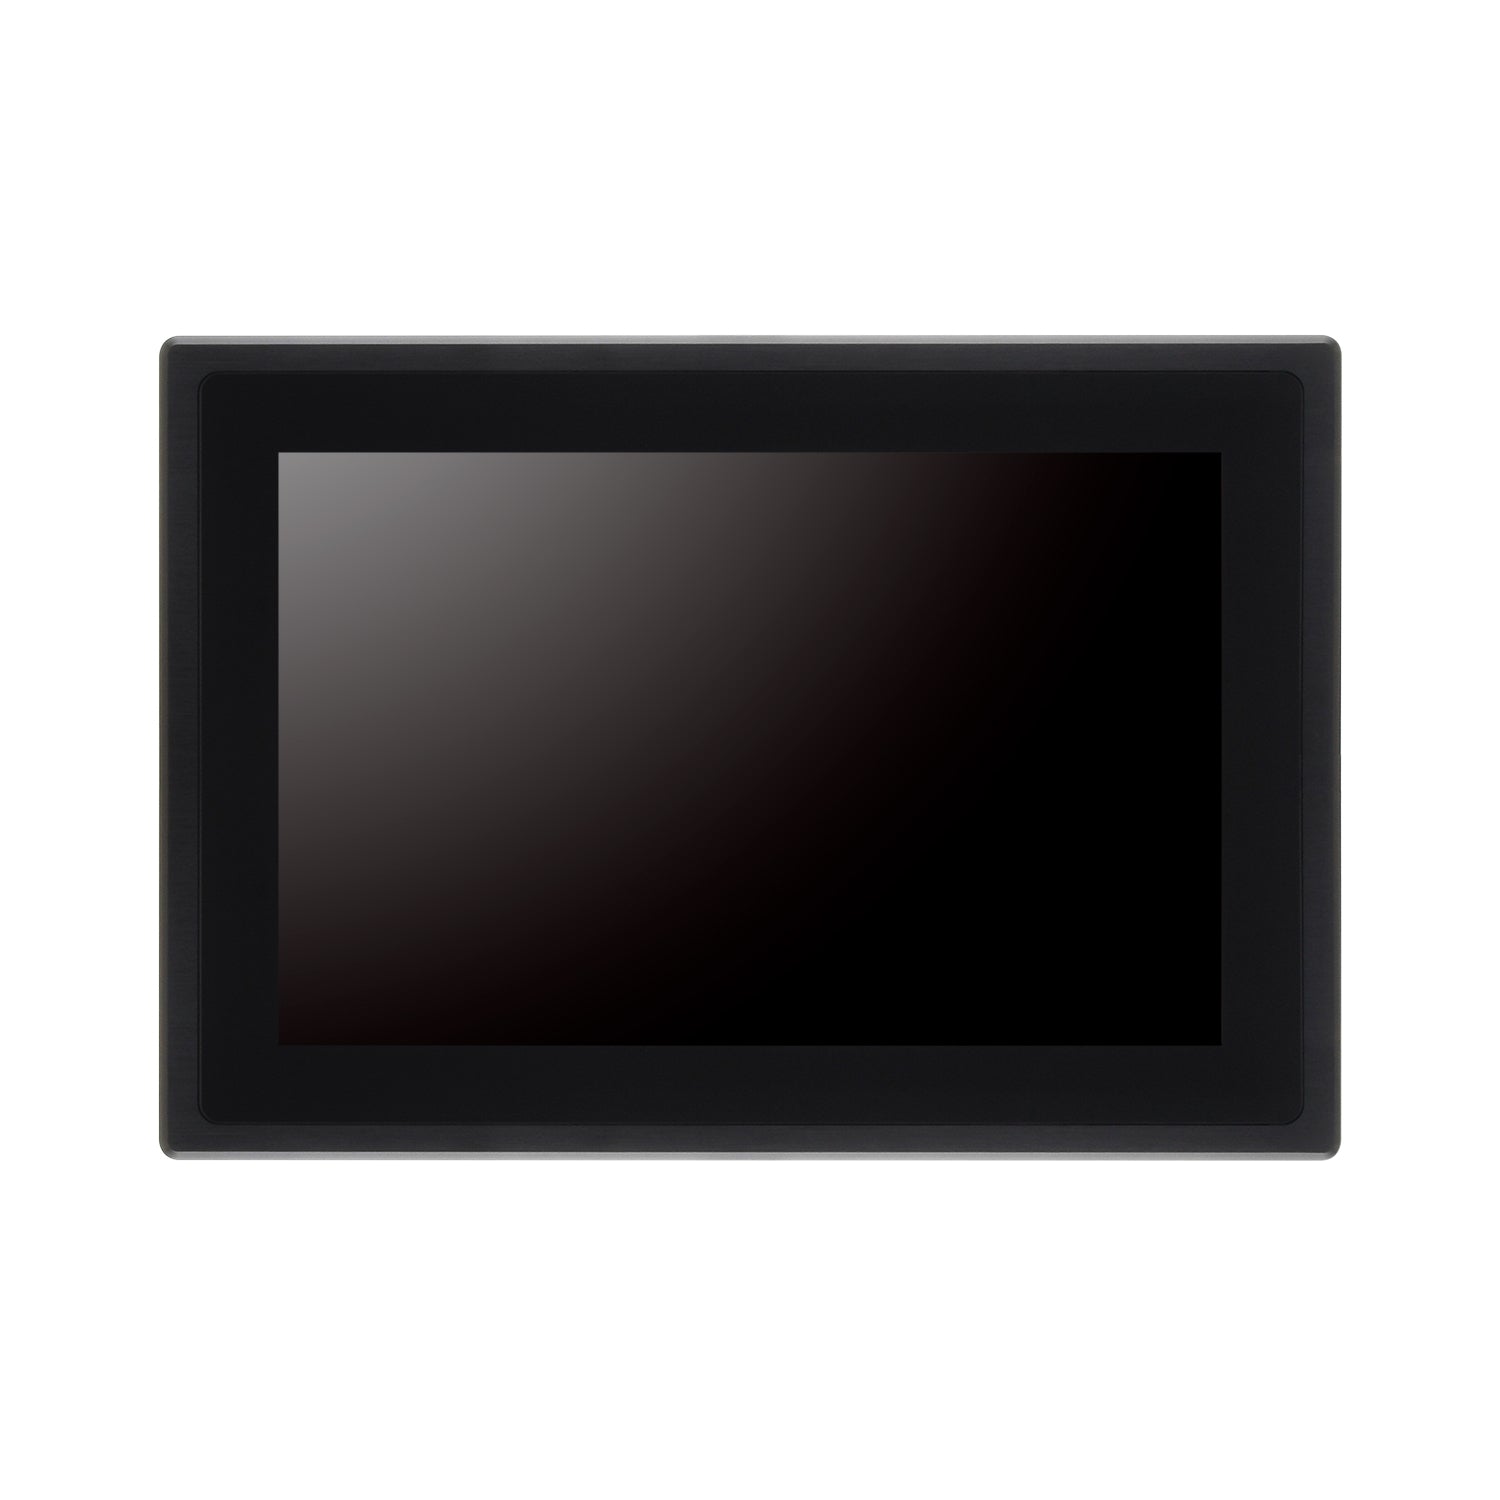 12.1インチWXGA産業用組み込み パネルマウント型ディスプレイ （タッチパネル仕様）plus one PRO [LCD-A121WV01 –  センチュリーダイレクト